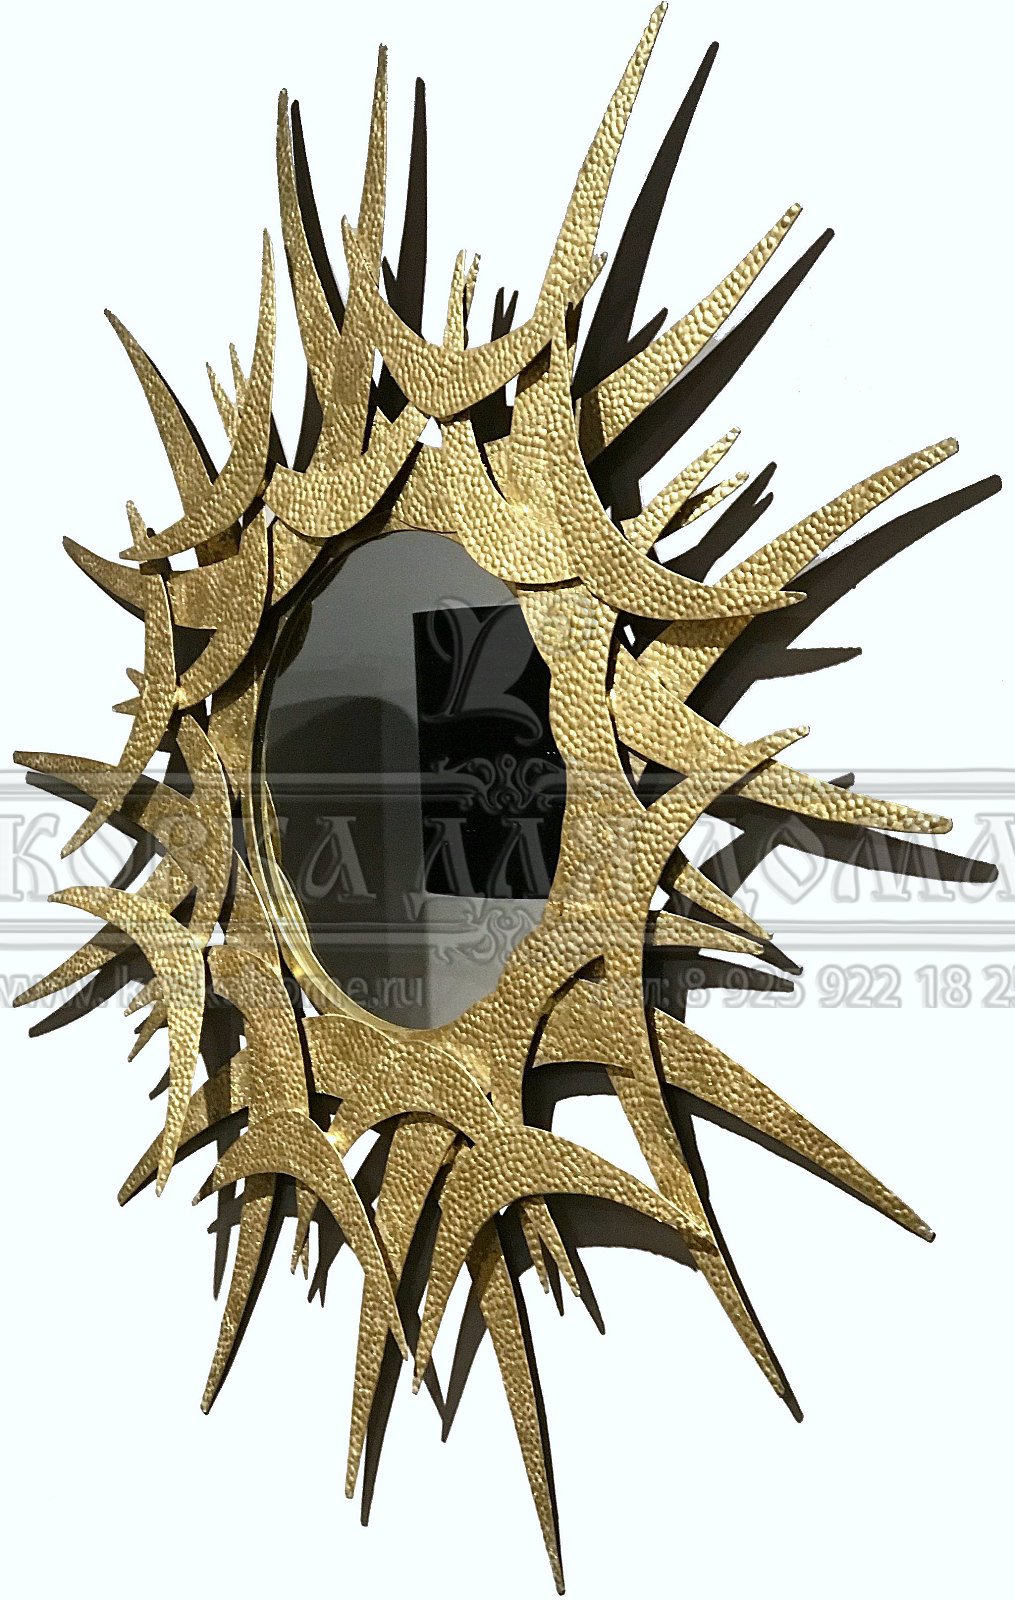 Зеркало кованое в стиле артдеко в декоративной стальной оригинальной раме похожее на солнце, настенное ручной работы.